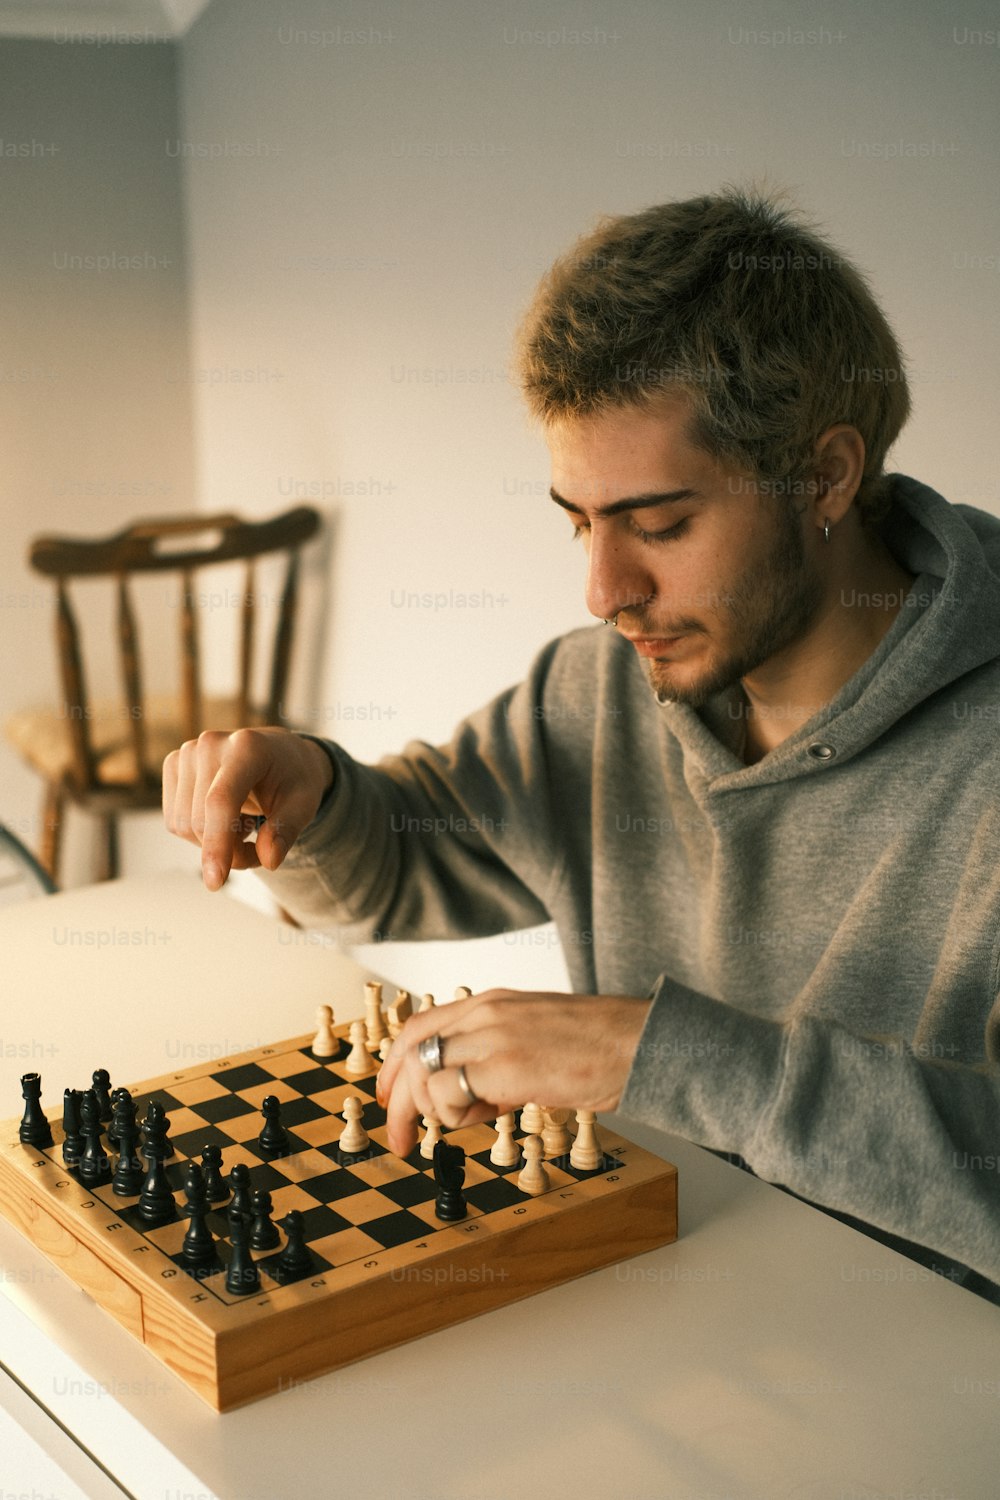 Un homme jouant une partie d’échecs sur une table